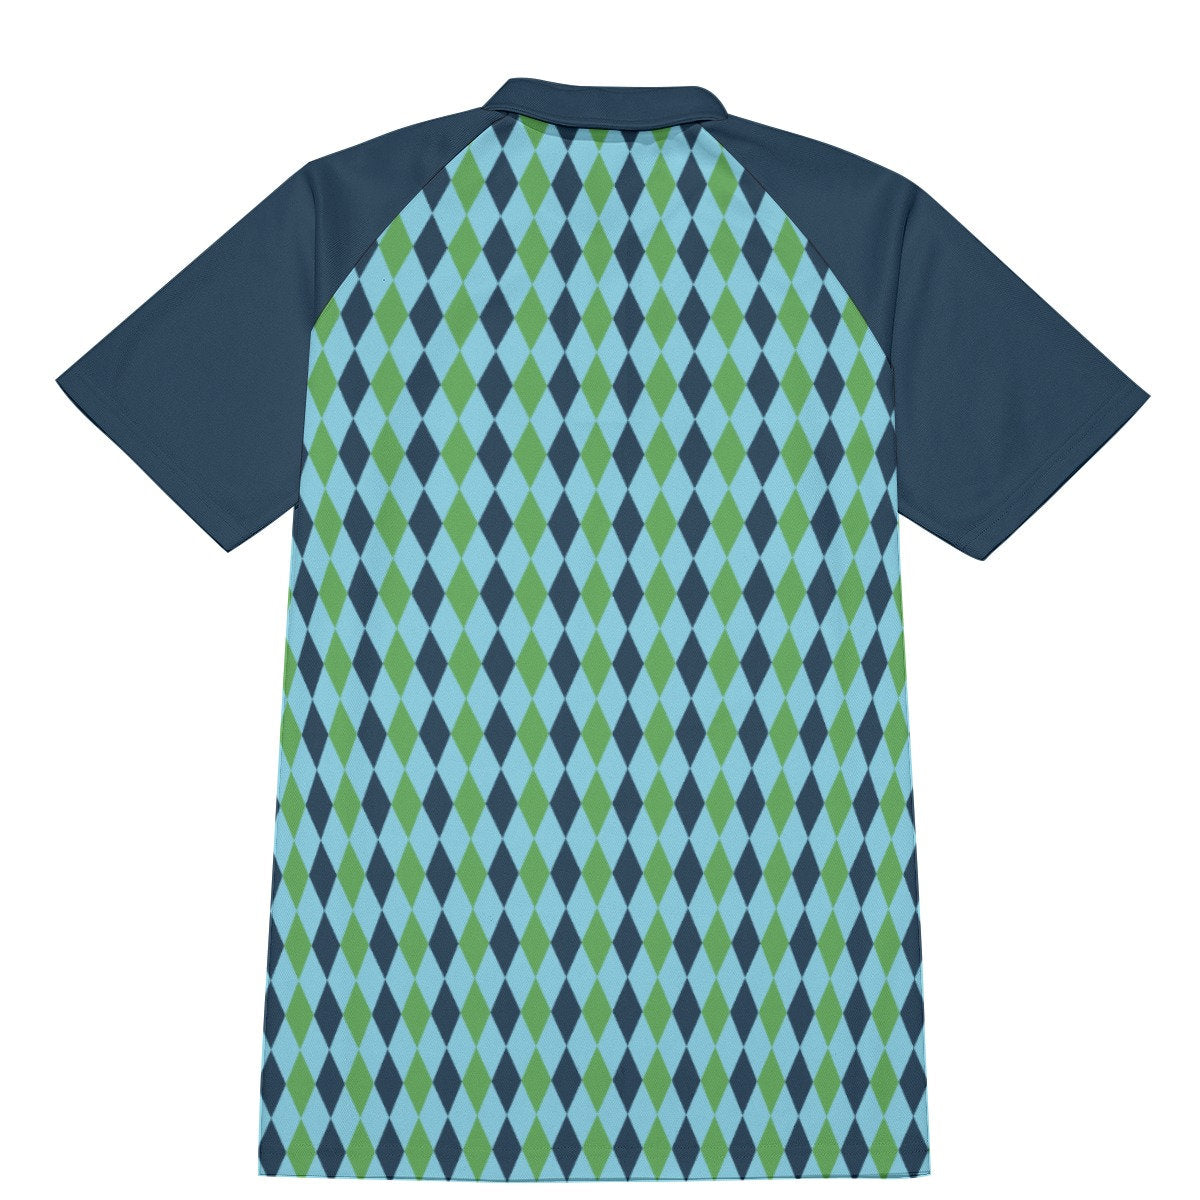 Polo Shirt, Men's Vintage, Men's Polo Shirt, Men's 60s Shirt,Blue Green Polo, Retro Tops, Vintage Shirt Men, Men's Knit Top, 60s polo shirt